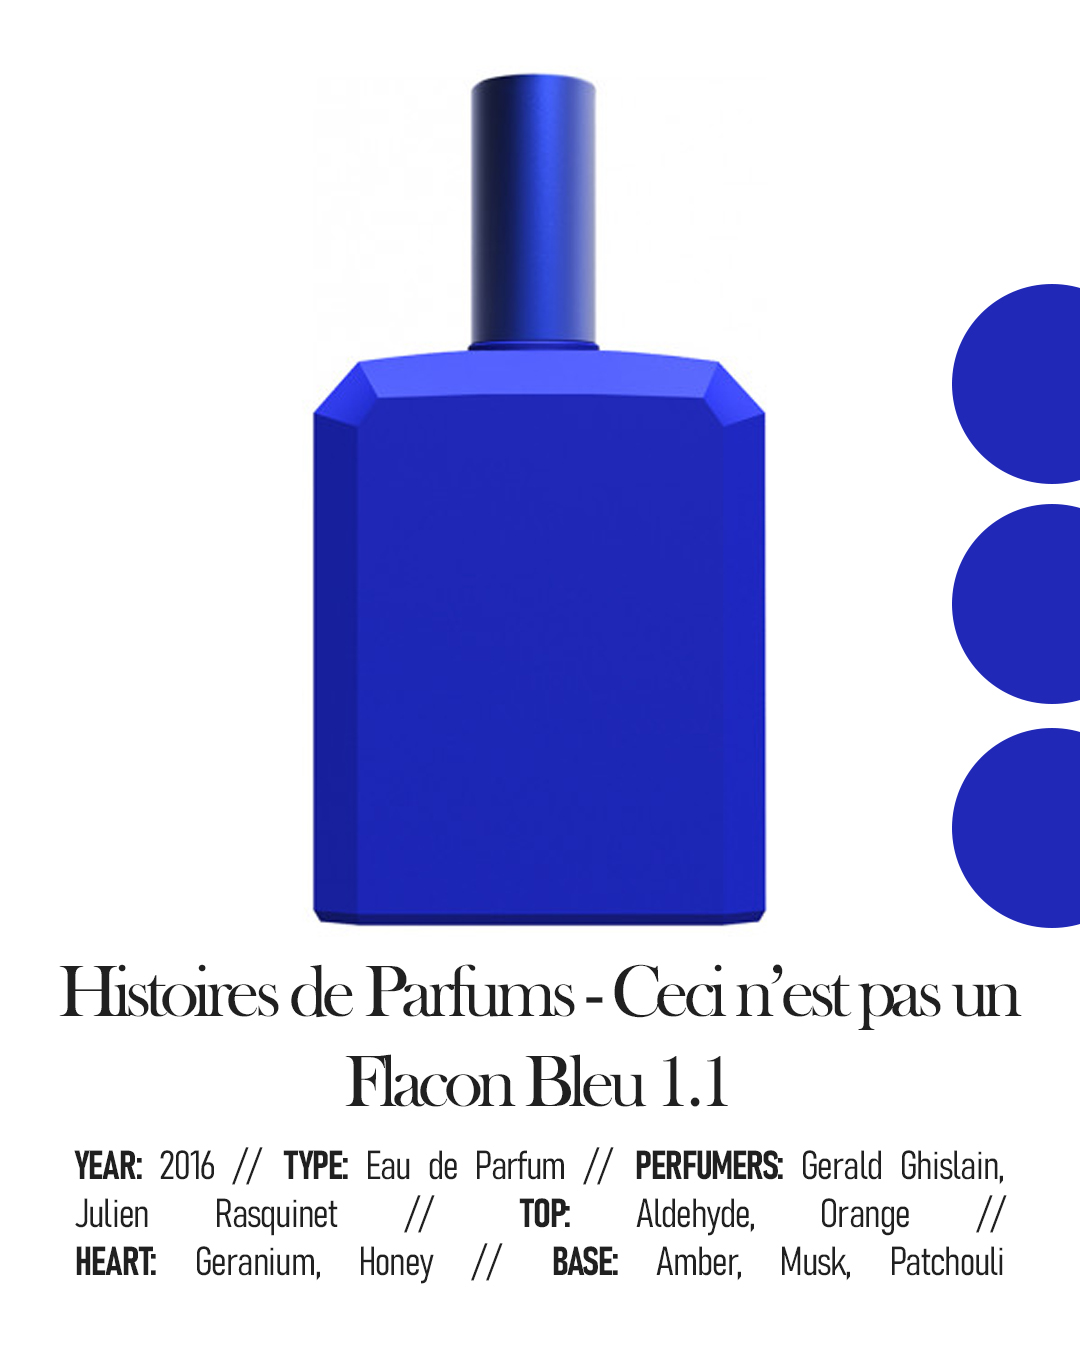 Histoires de Parfums - Ceci n'est pas un Flacon Bleu 1.1